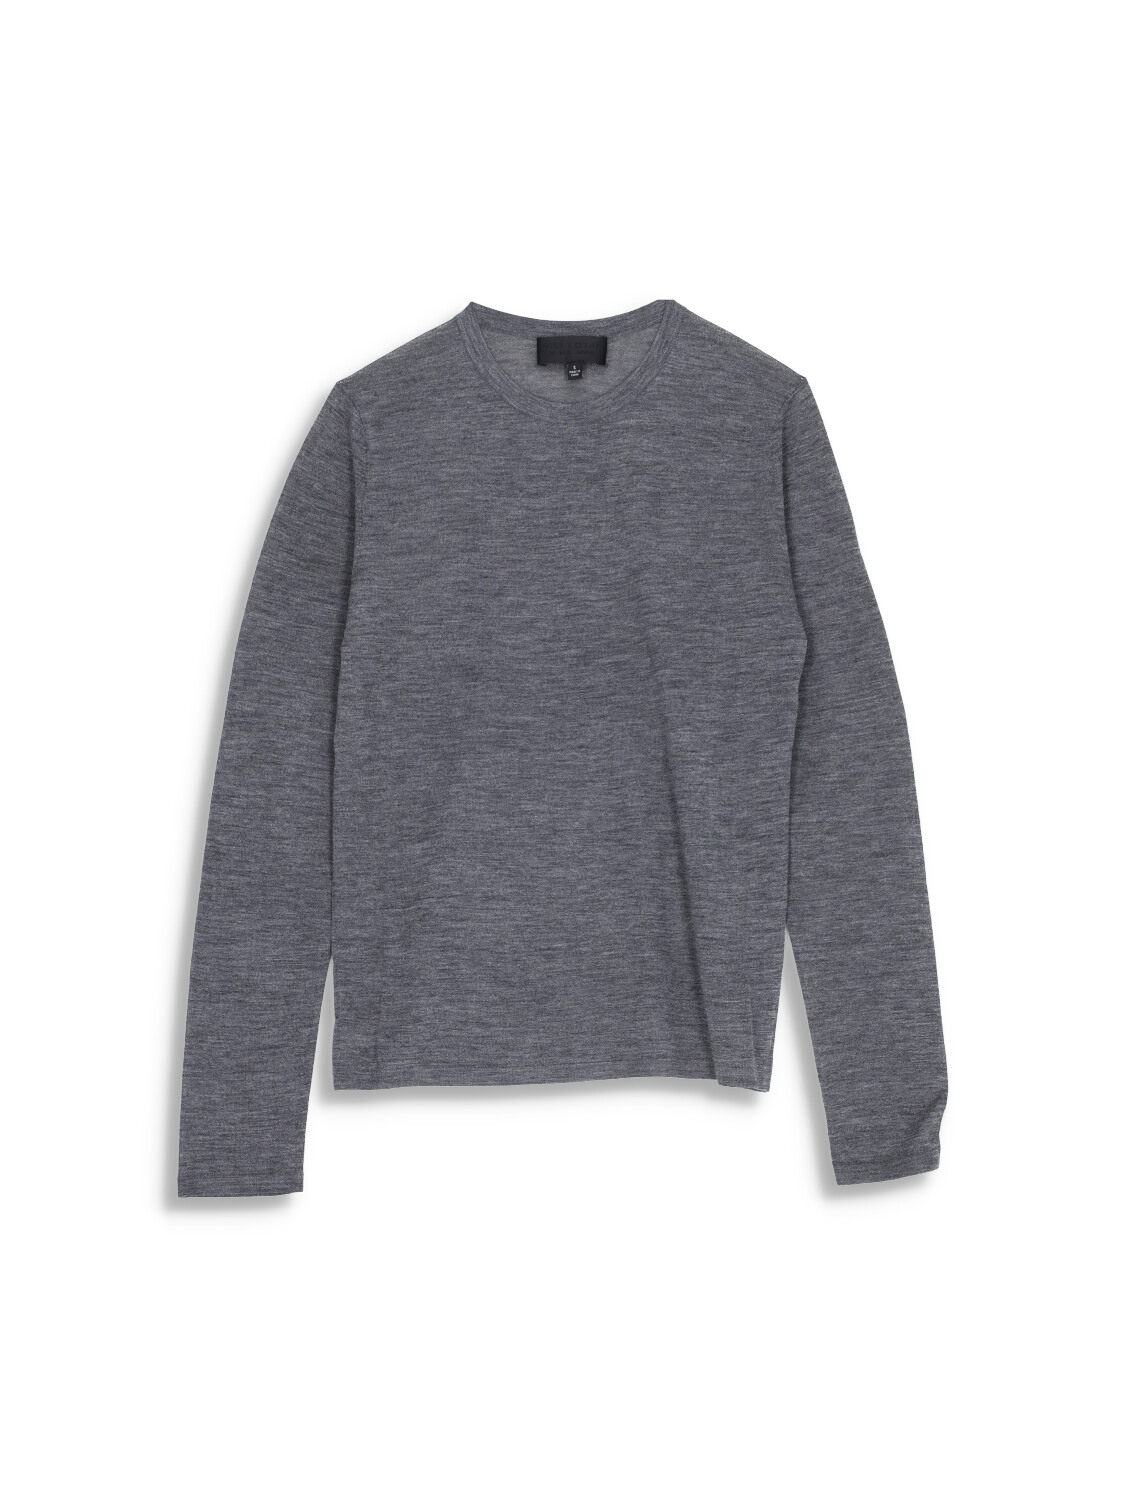 Candice Sweater - Silk long sleeve shirt